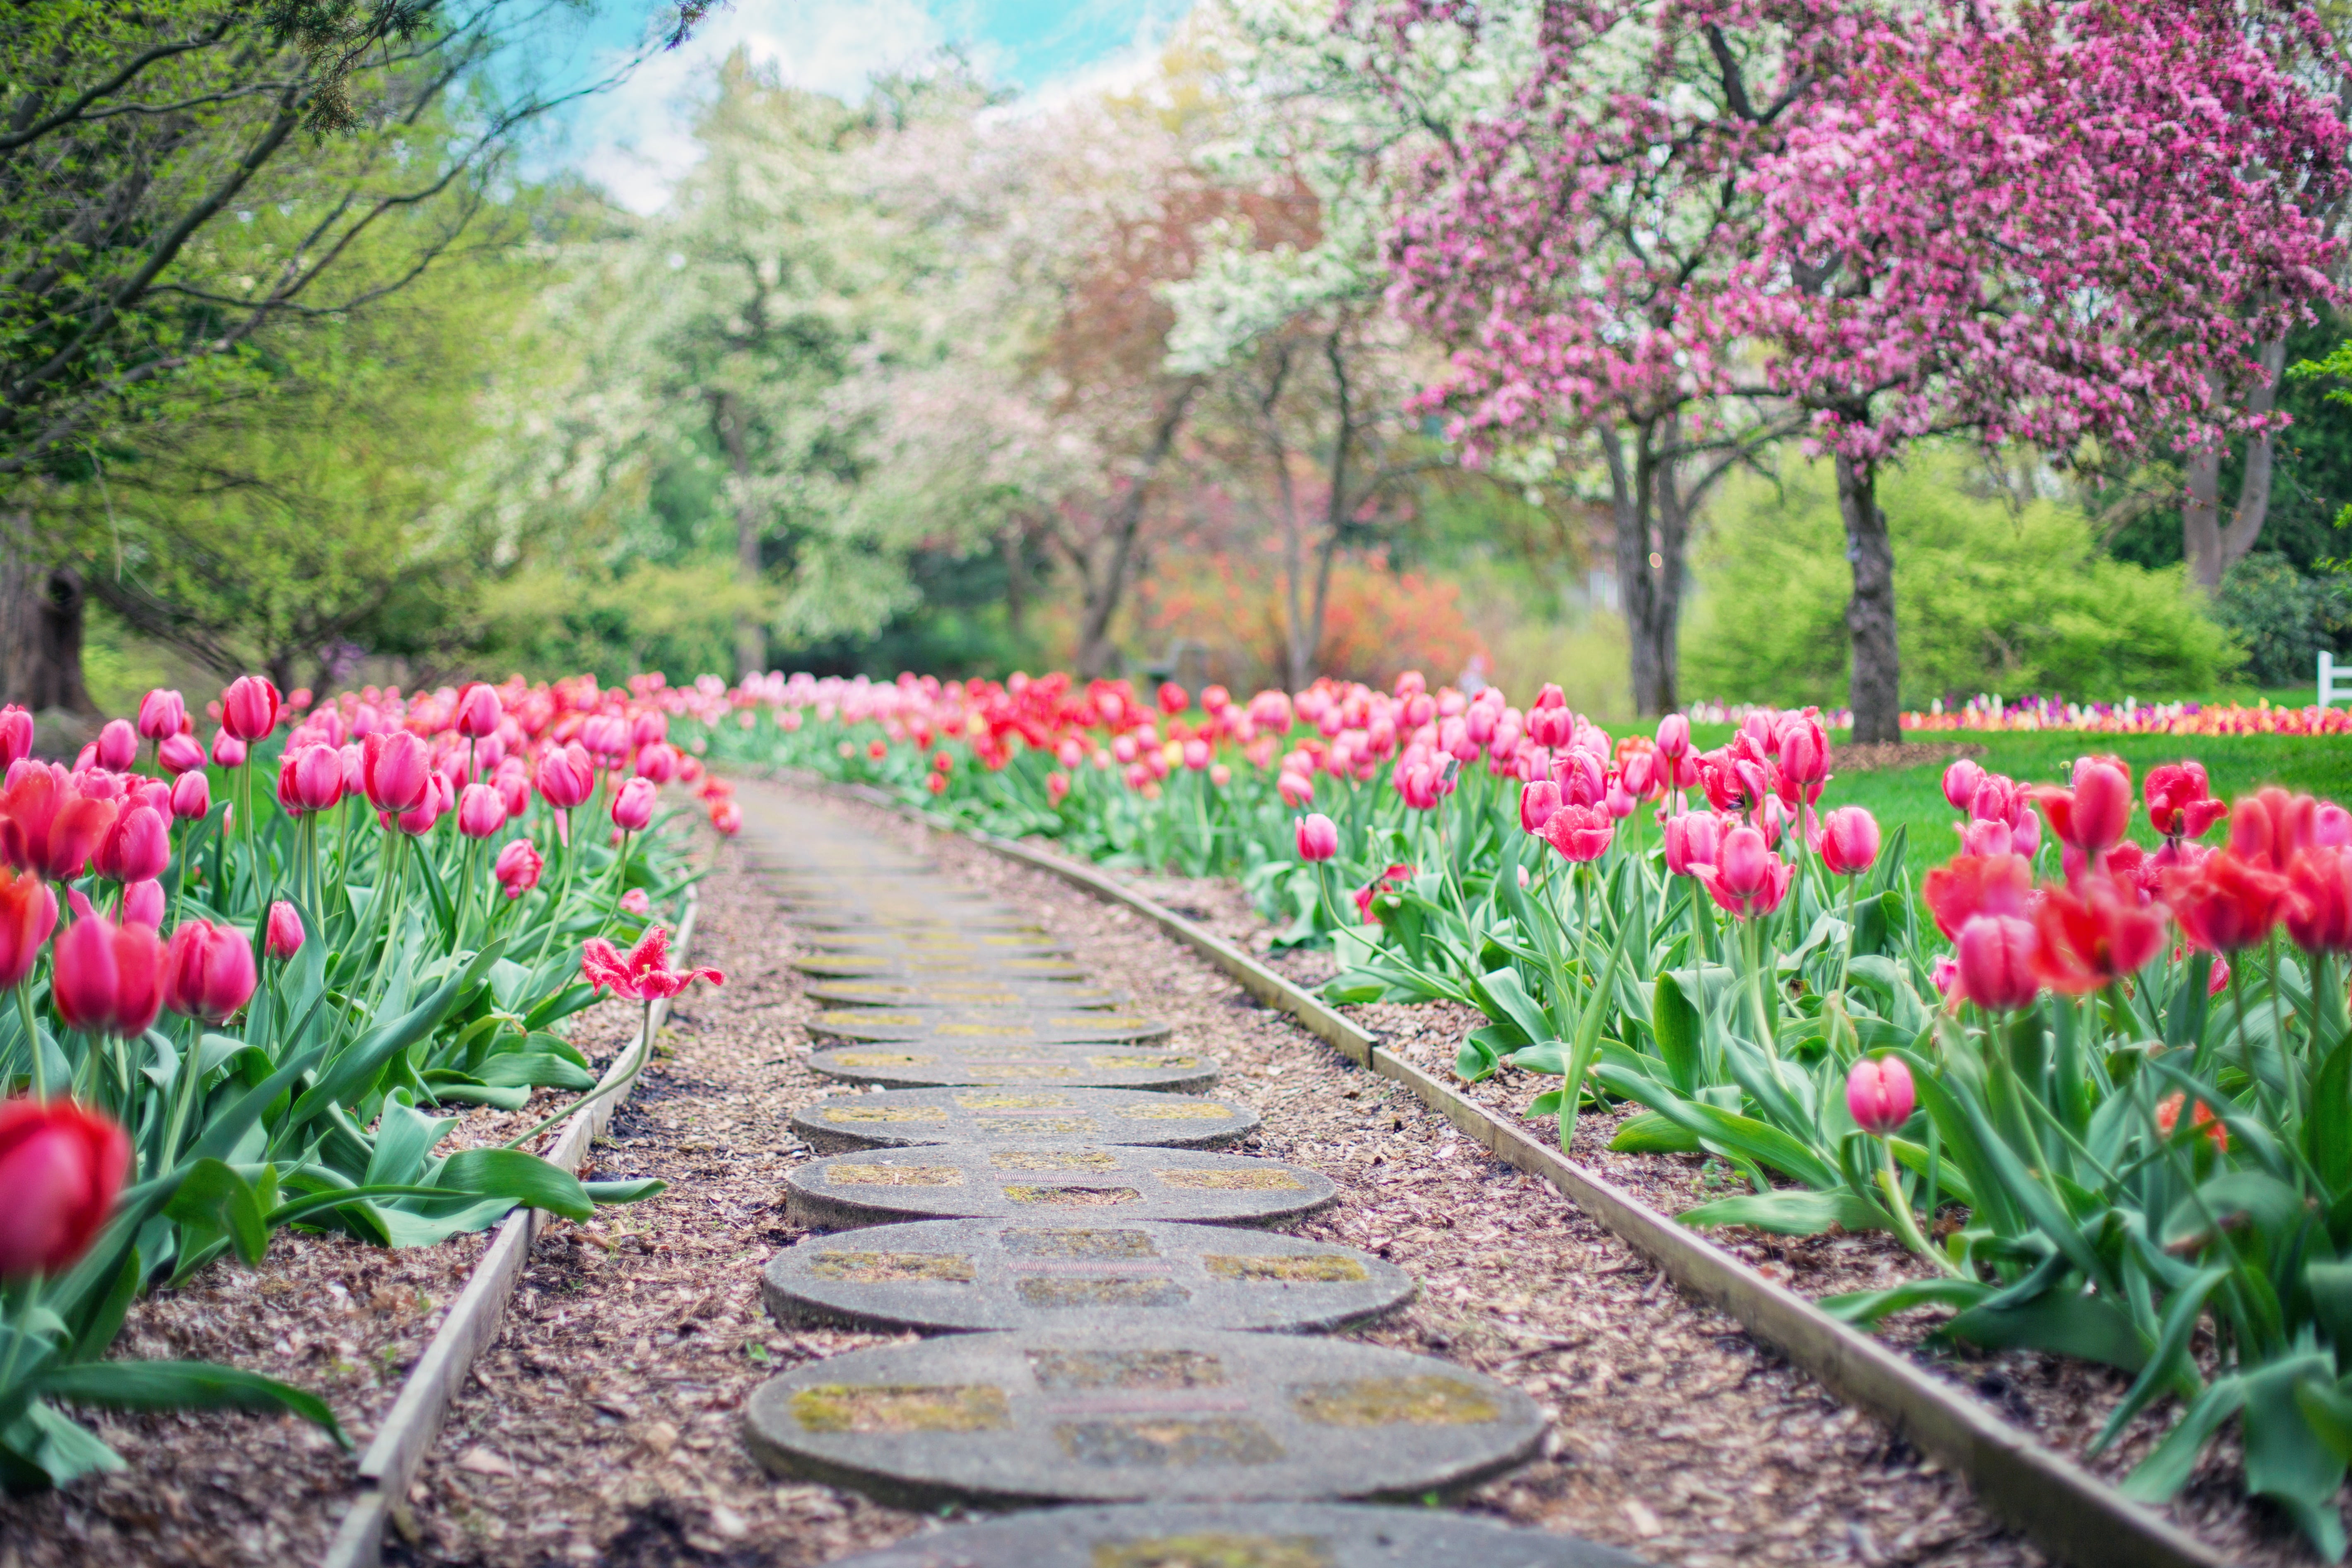 desire road in between pink tulip flower field, pathway, pink tulips